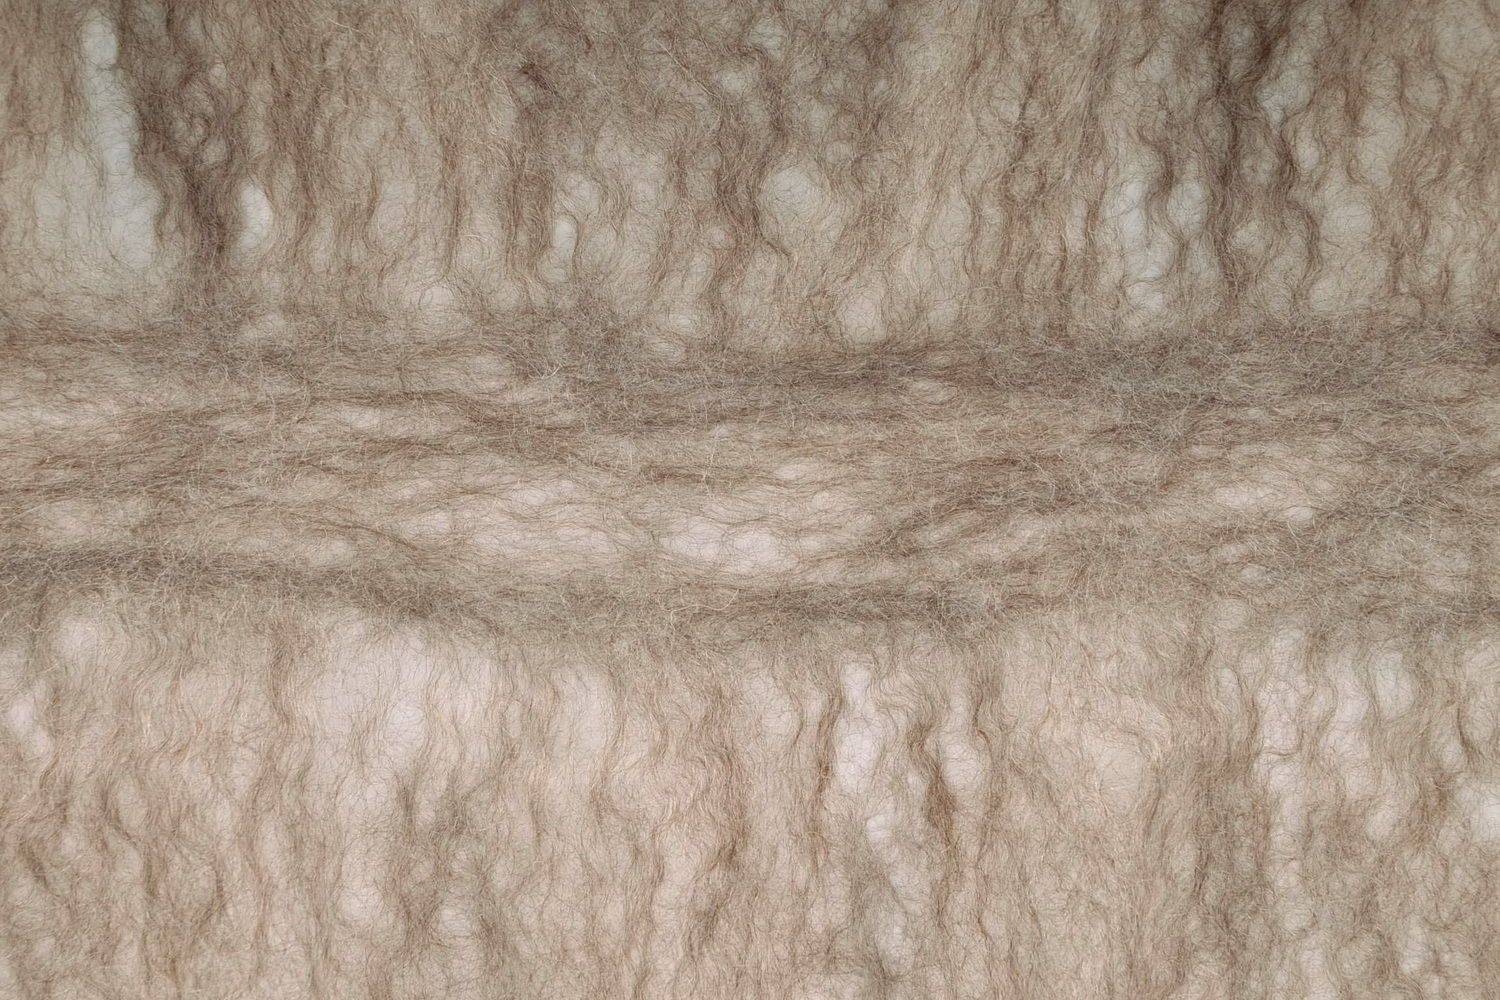 Cachecol de lã natural foto 5